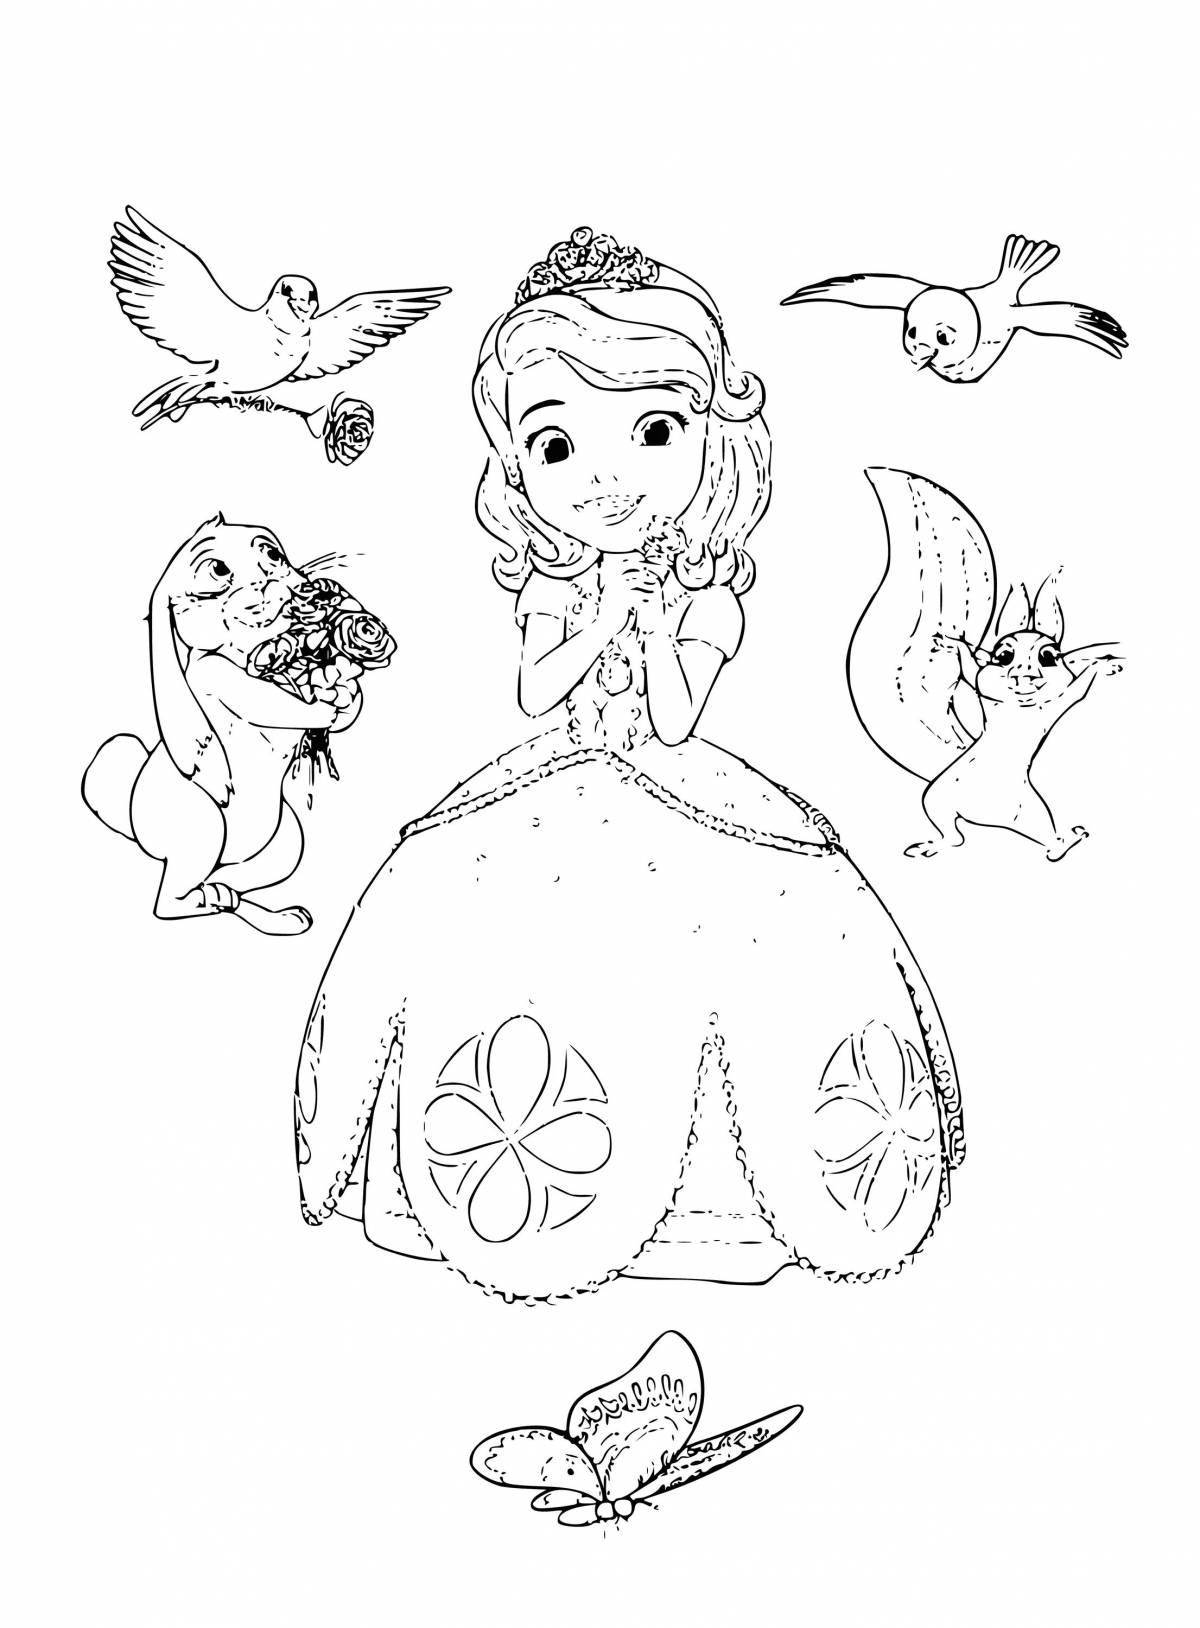 Elegant princess sophia coloring book for kids